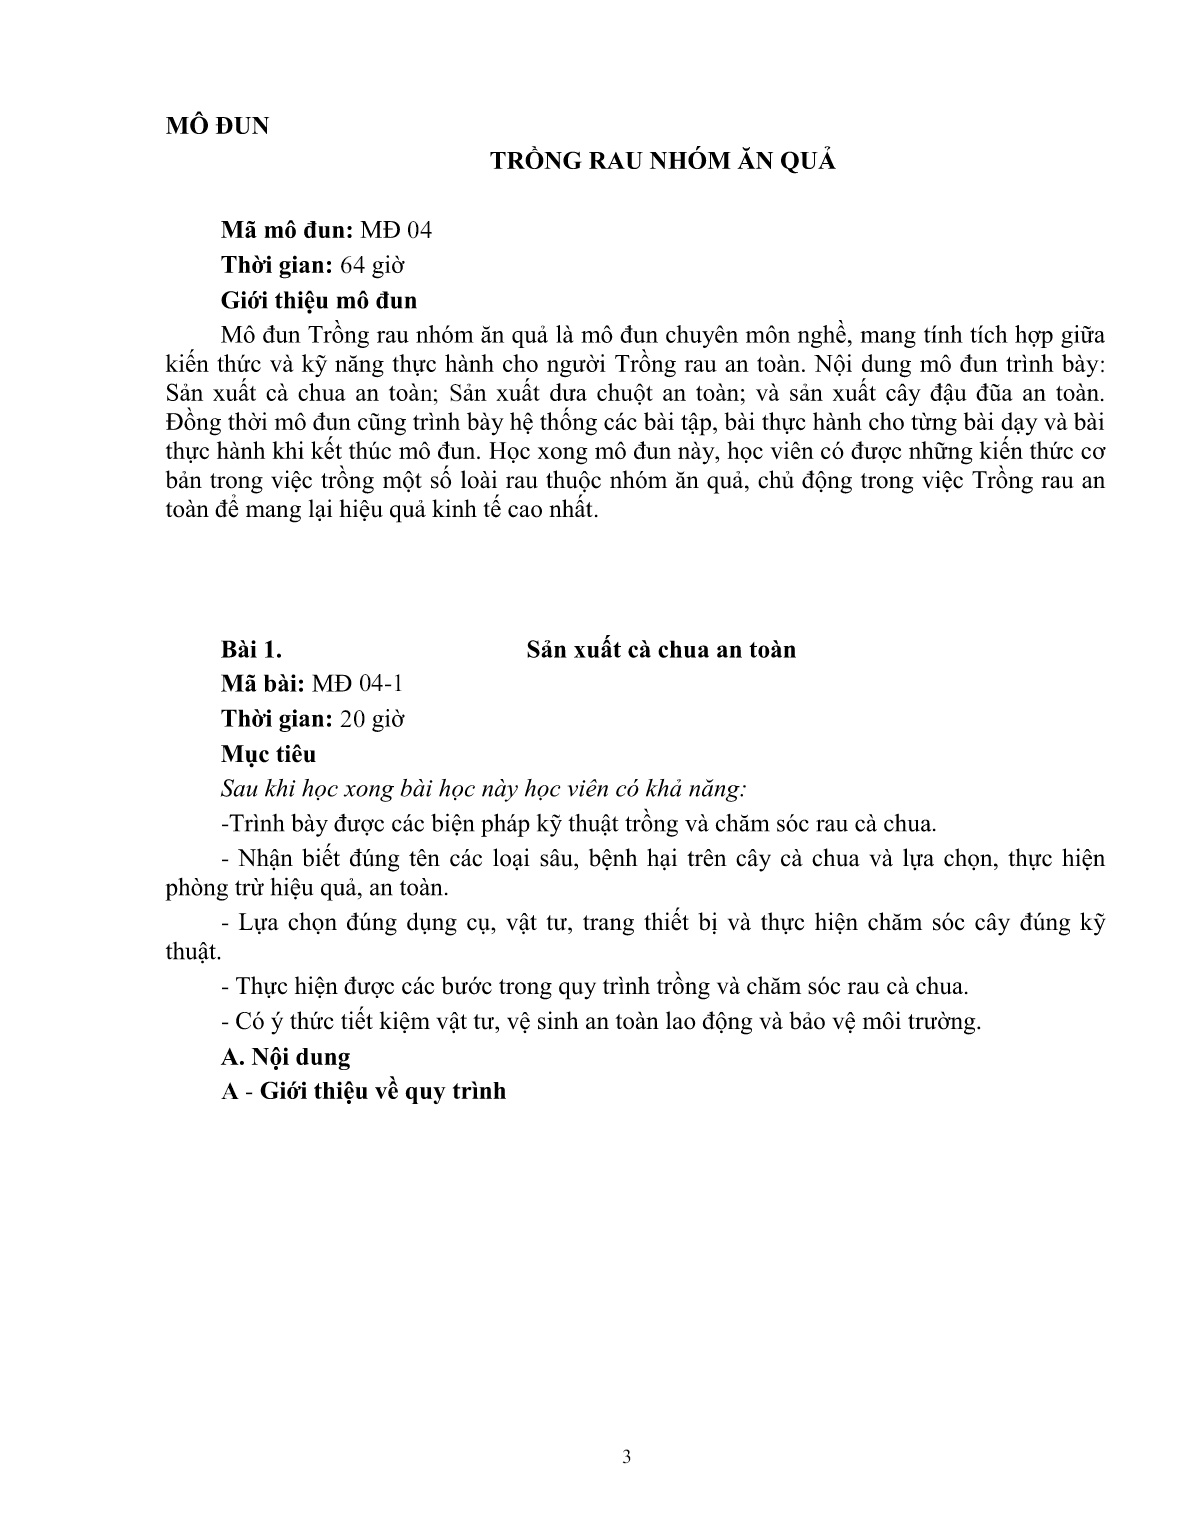 Giáo trình mô đun Trồng rau nhóm ăn quả (Trình độ: Đào tạo dưới 03 tháng) trang 4